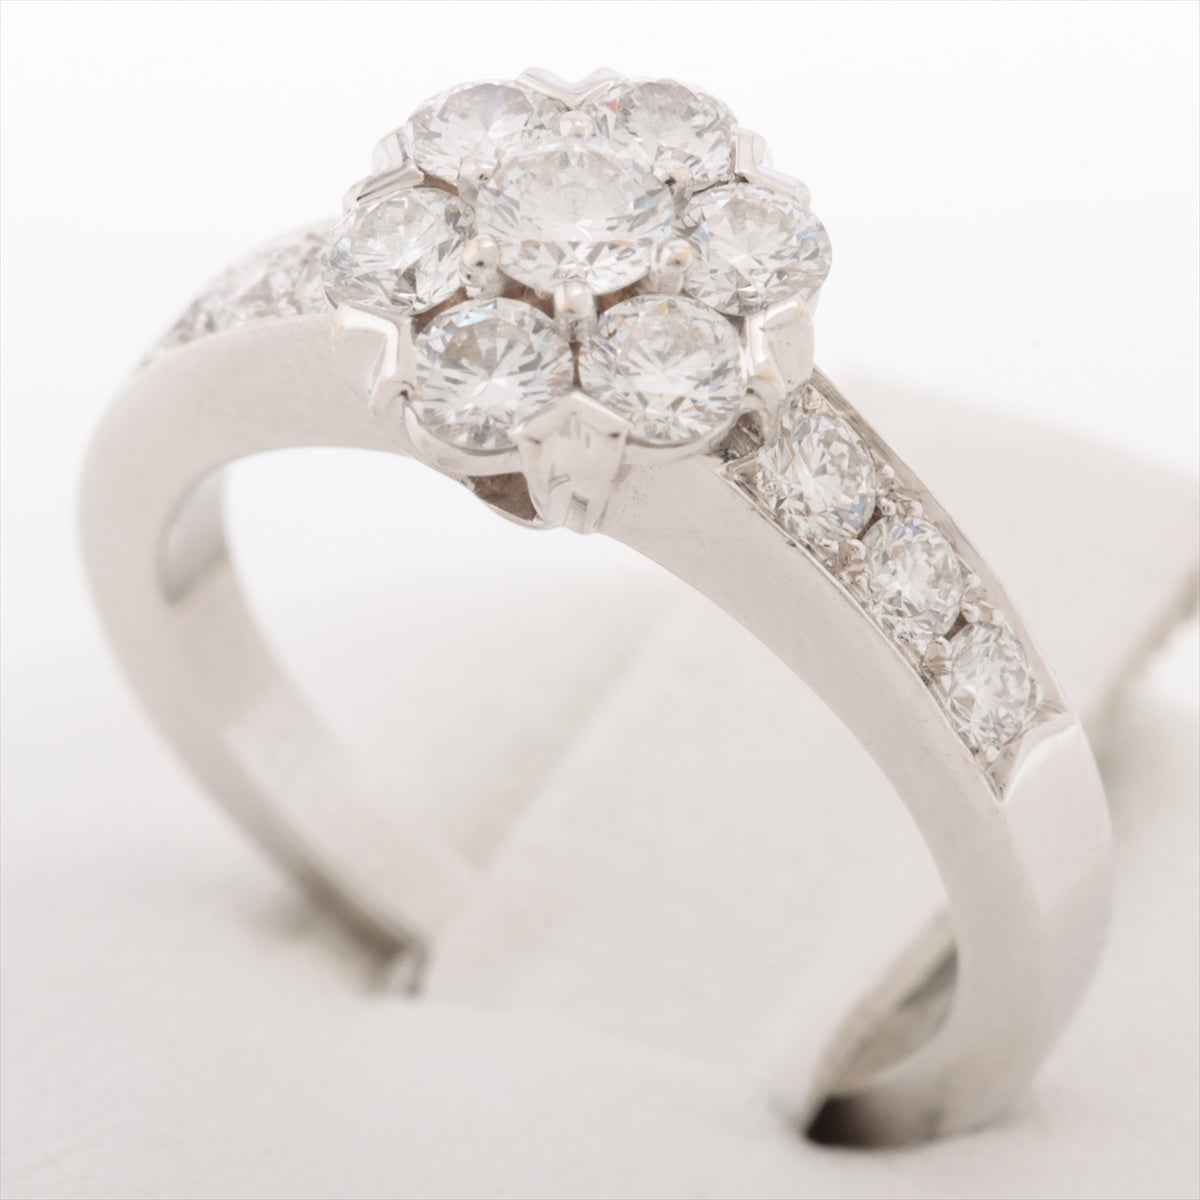 Van Cleef & Arpels Fleurette diamond rings 750(WG) 4.0g 47